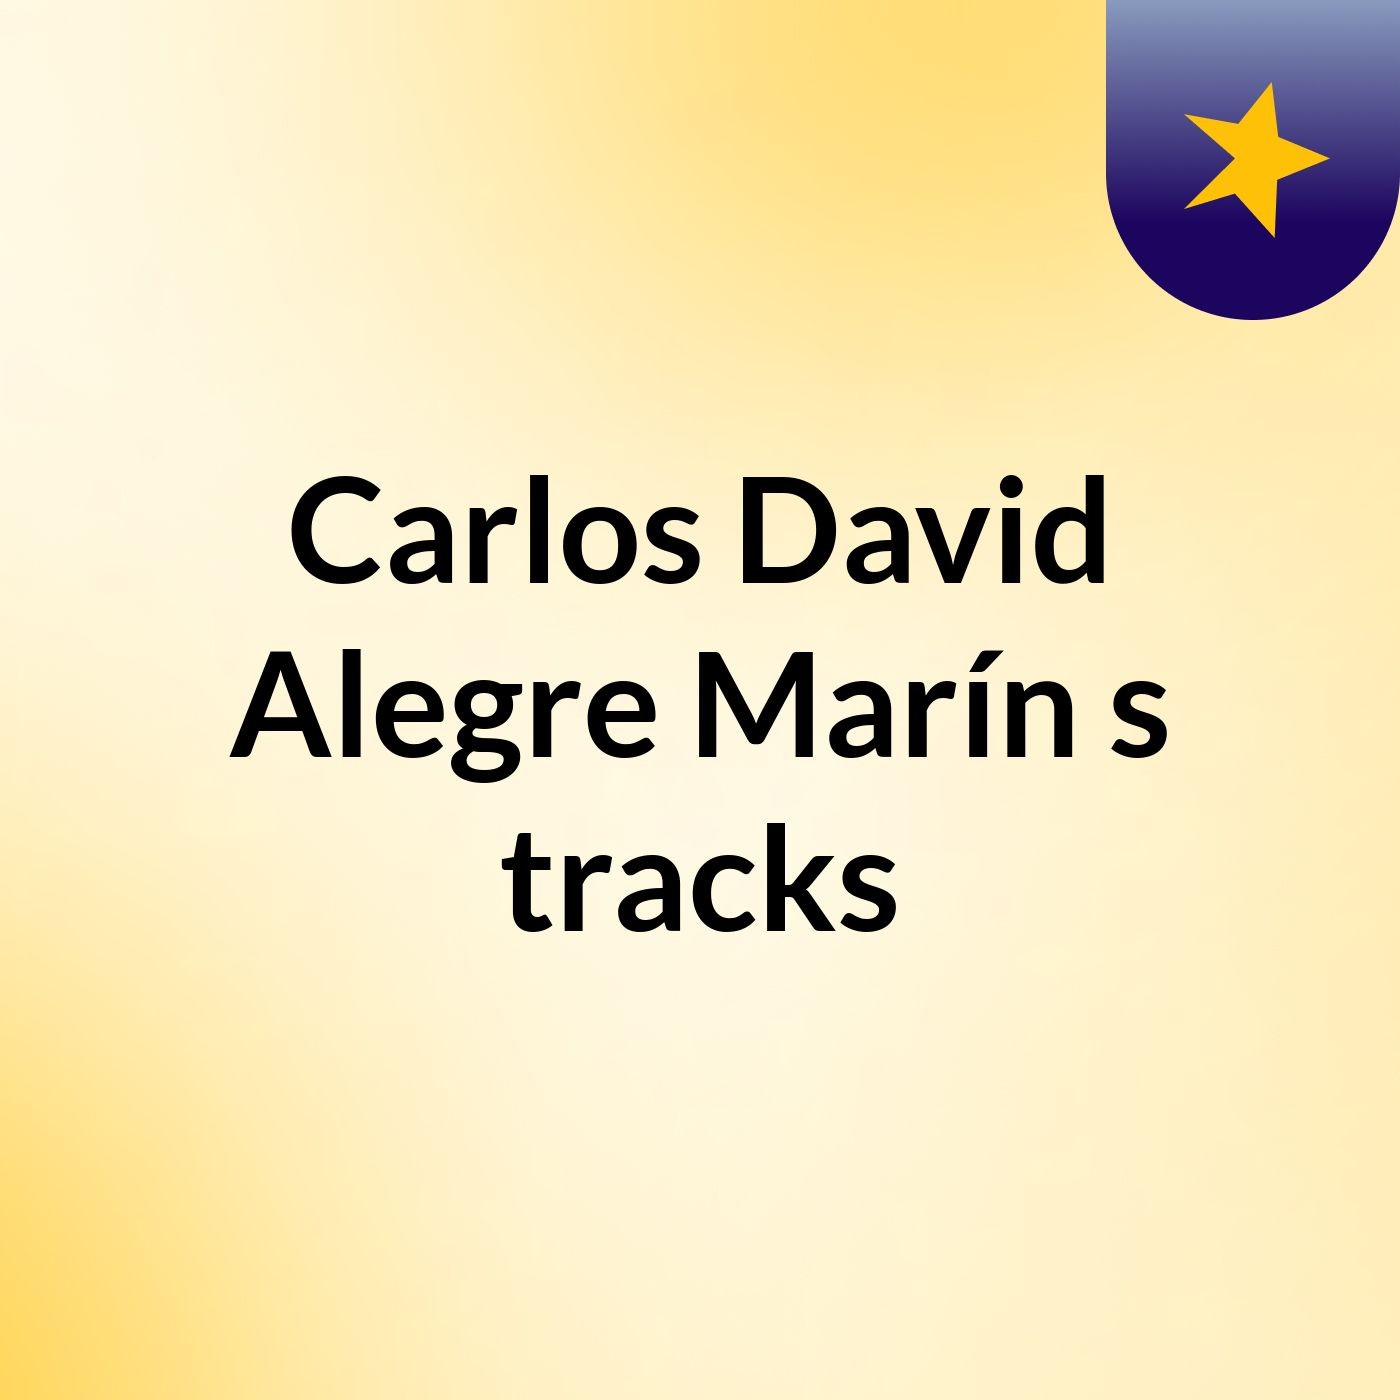 Carlos David Alegre Marín's tracks